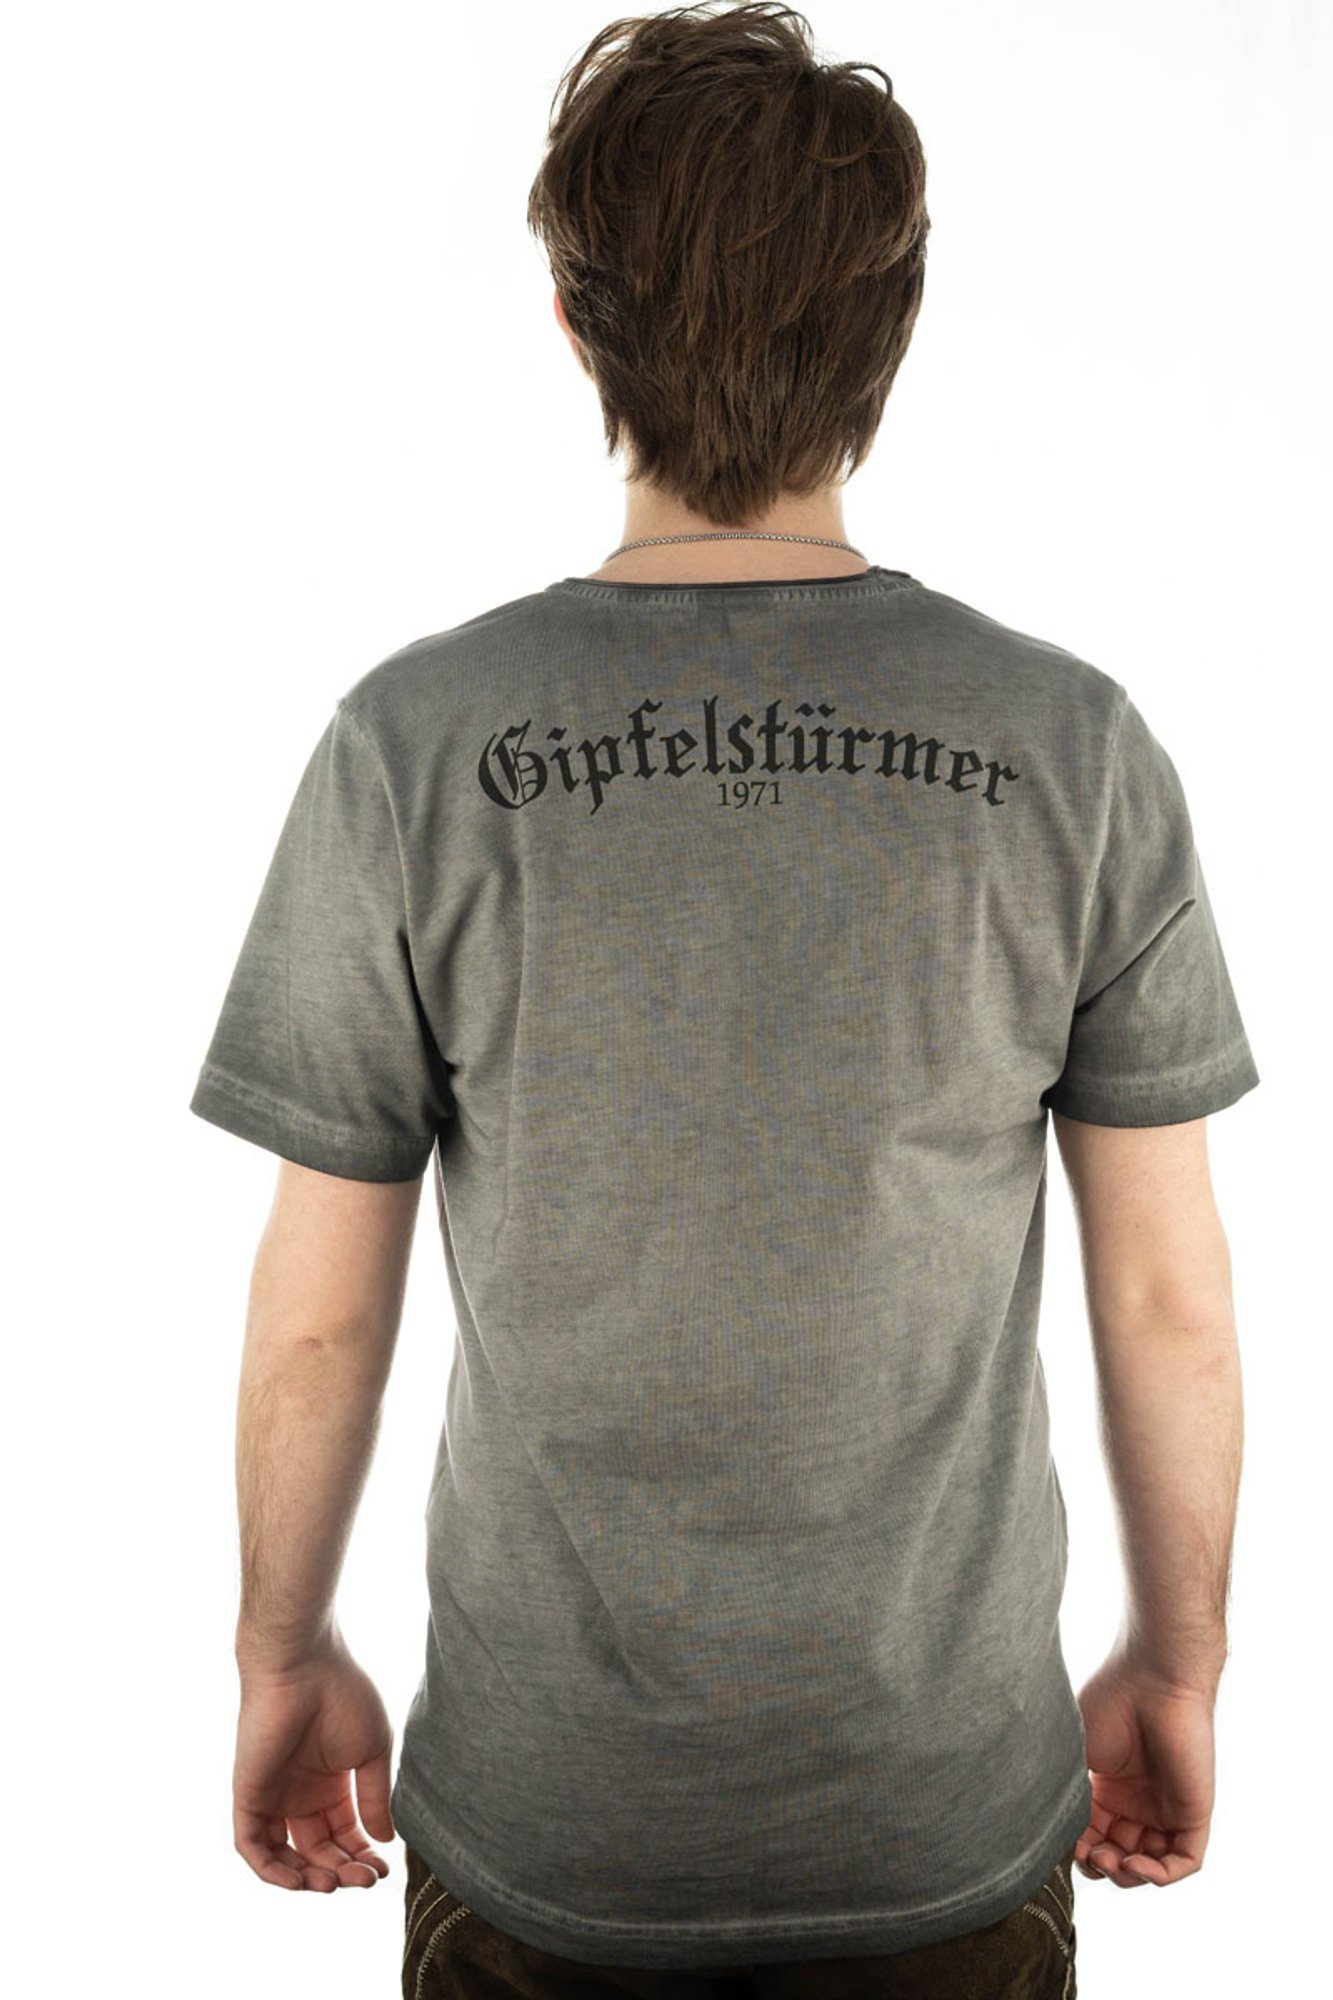 OS-Trachten Trachtenshirt Kurzarm mit T-Shirt Motivdruck Praiol anthrazit